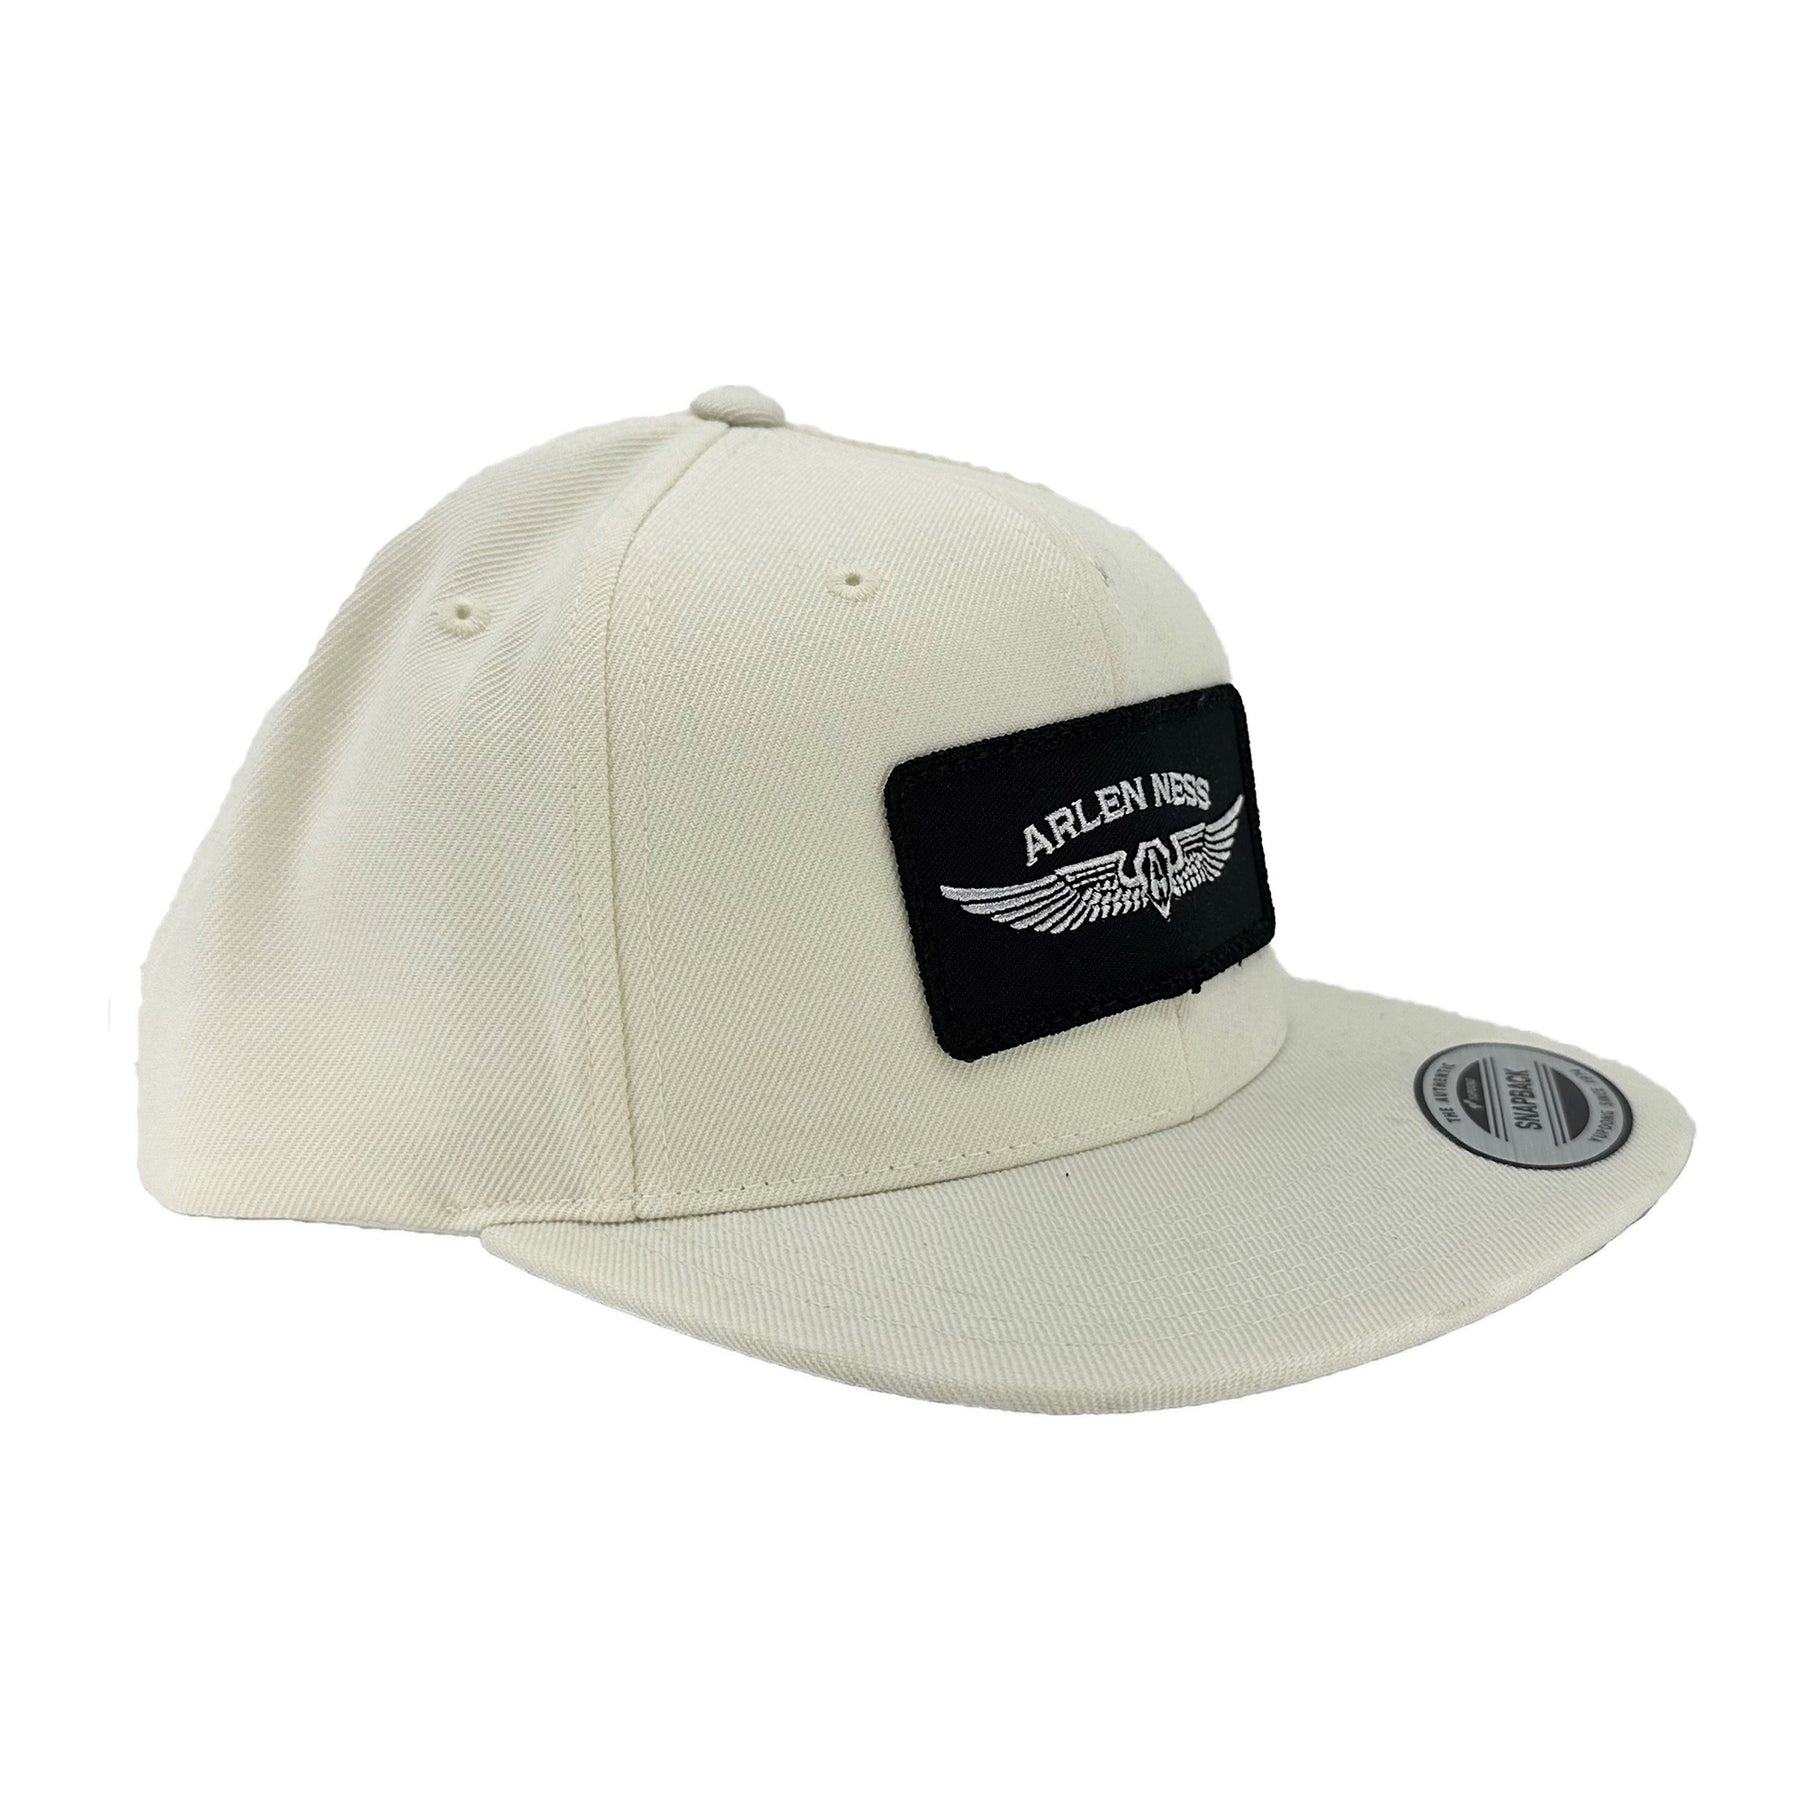 Flying Shield Snapback Hat, White